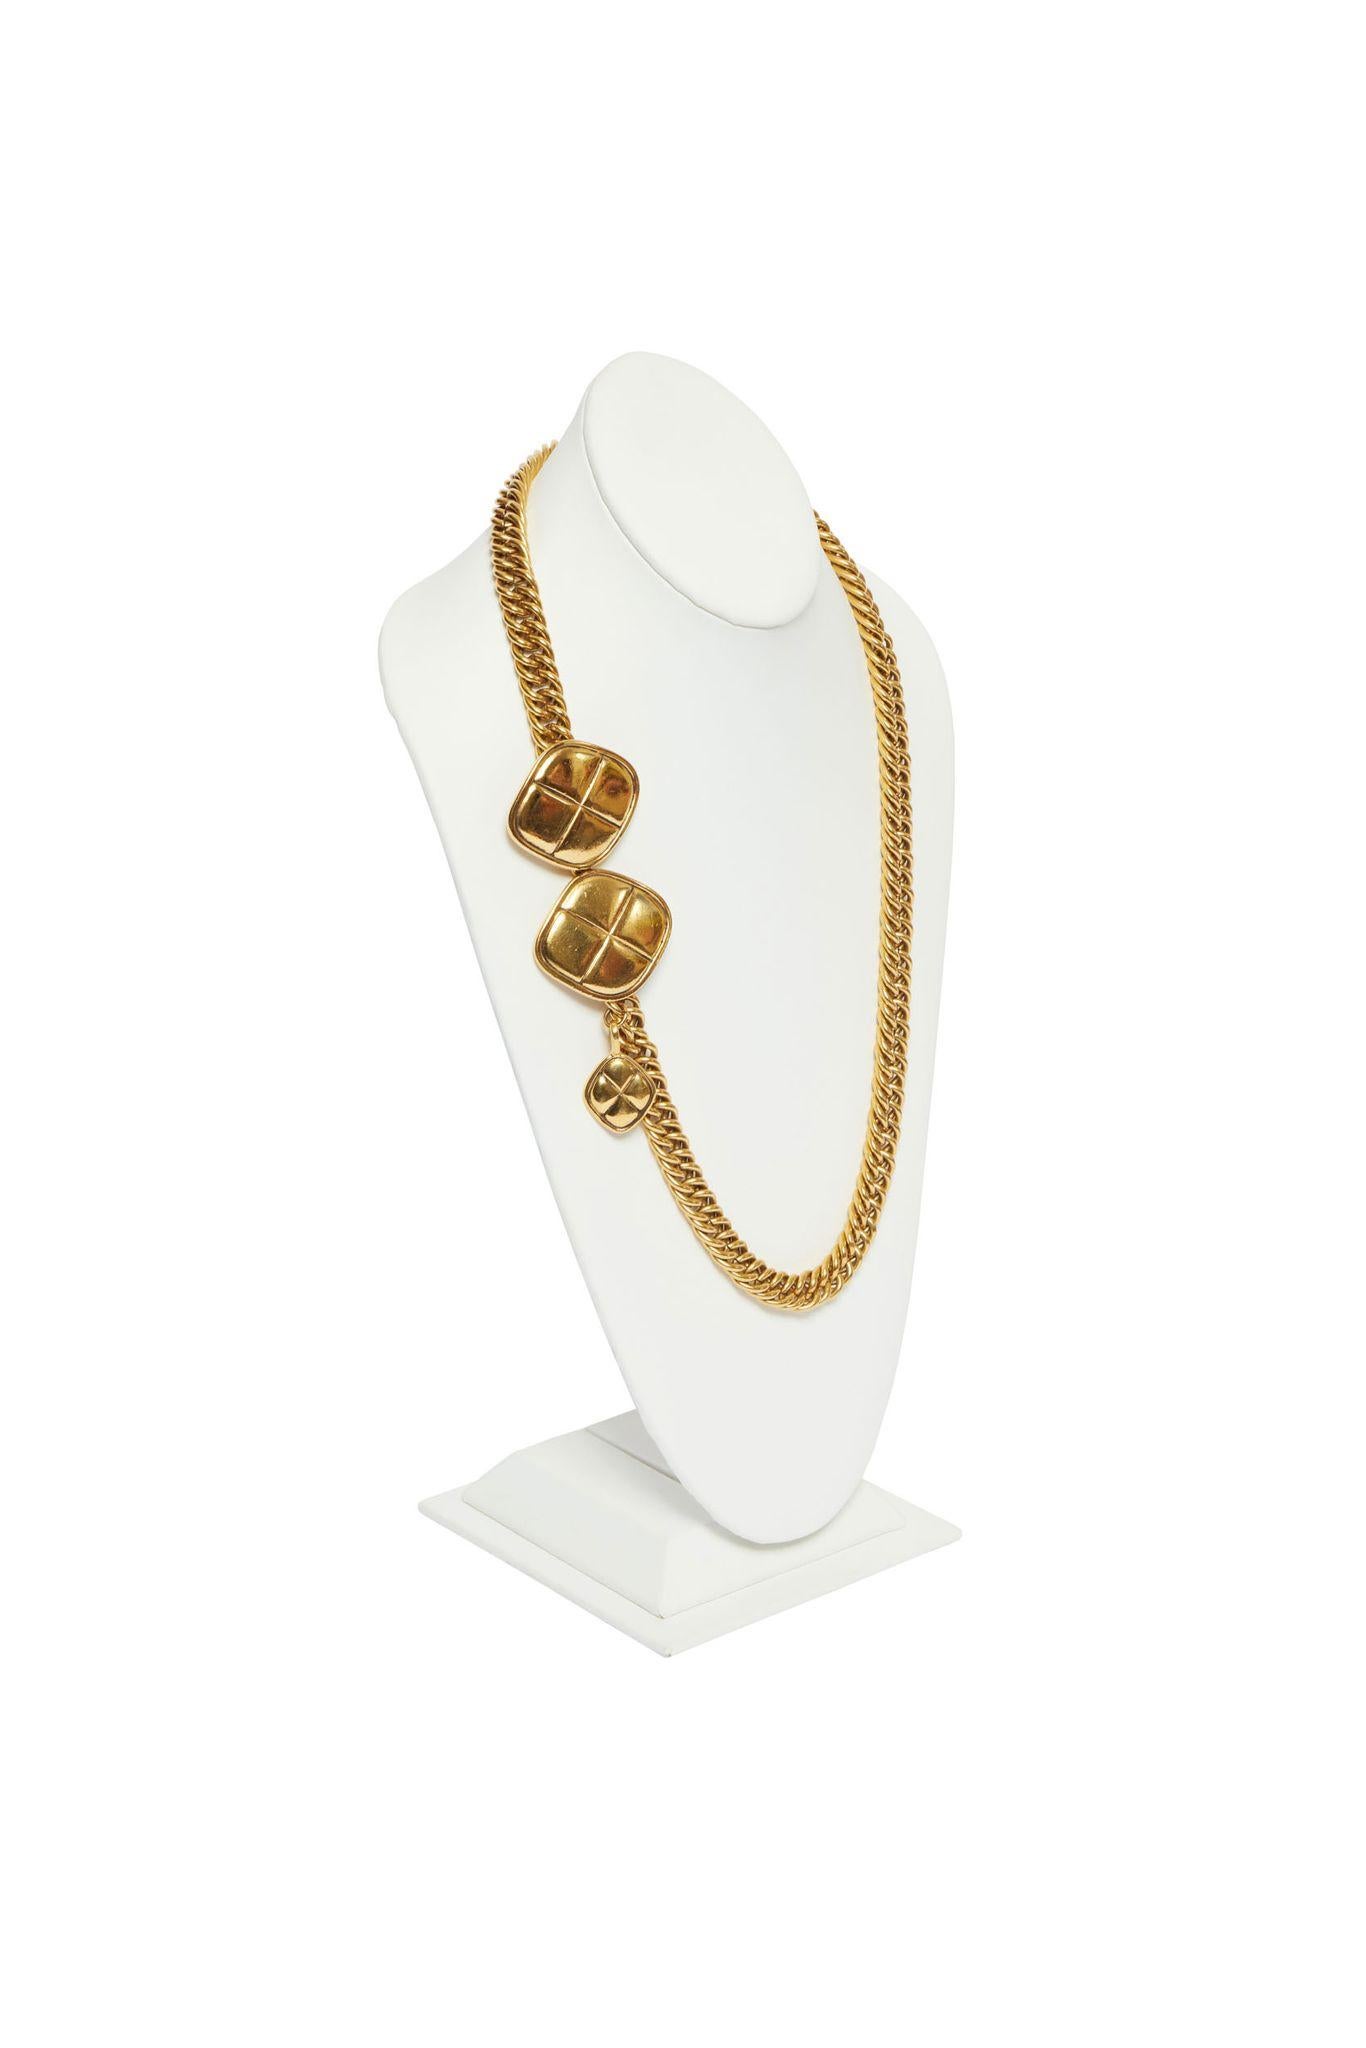 Chanel 80s gesteppter Gürtel, kann als Halskette getragen werden. Hervorragender Zustand, kommt mit Original-Etui oder Box.